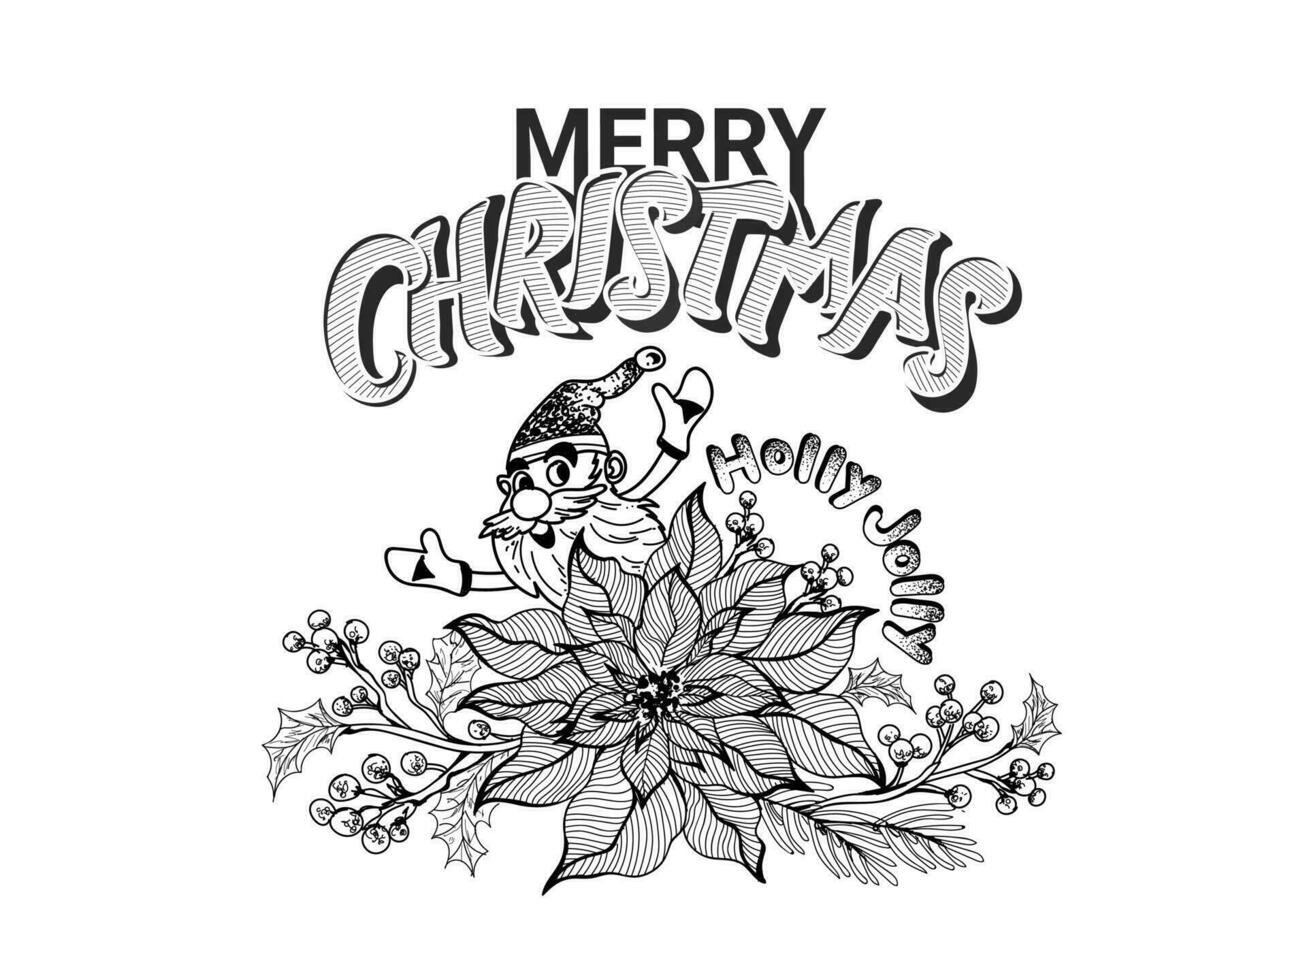 garabatear estilo alegre Papa Noel claus con flor de pascua flor, Navidad hojas y baya ramas en blanco antecedentes para acebo alegre alegre Navidad celebracion. vector